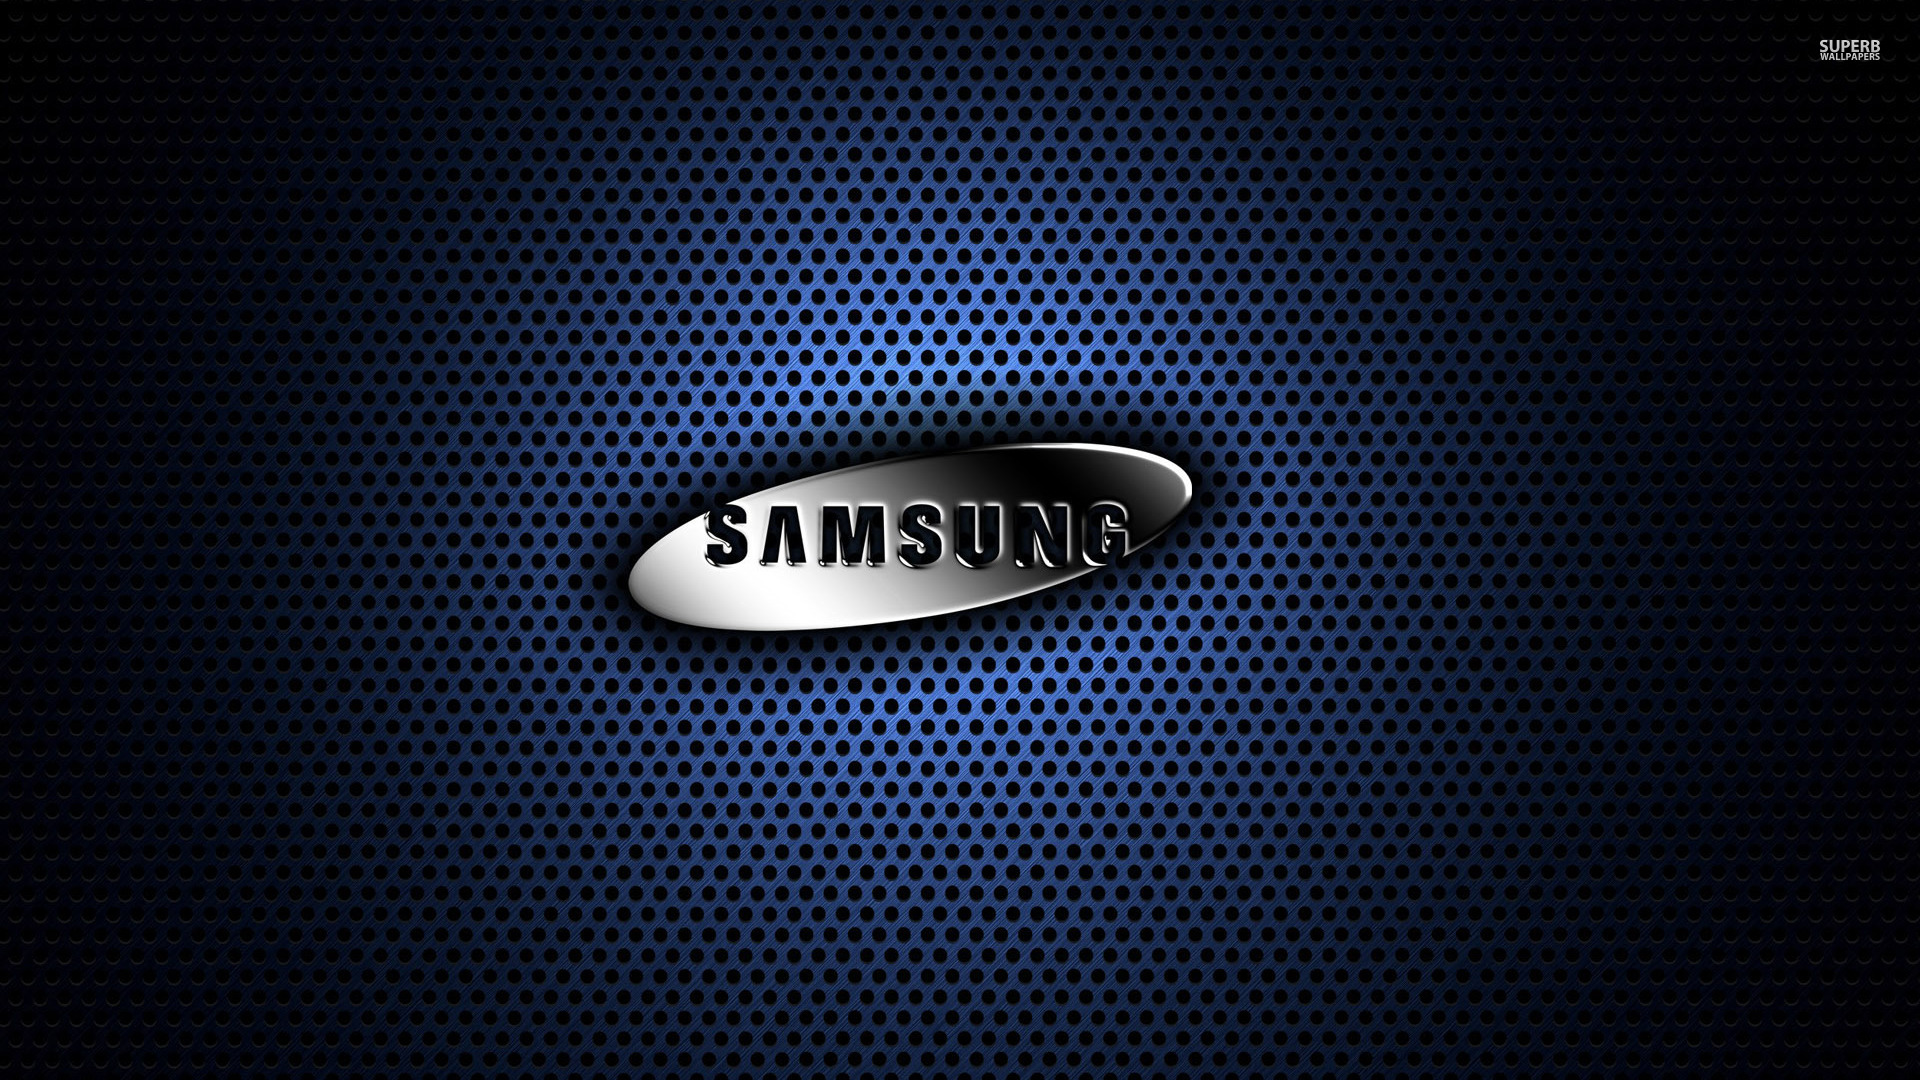 Samsung wallpaper 1920x1080